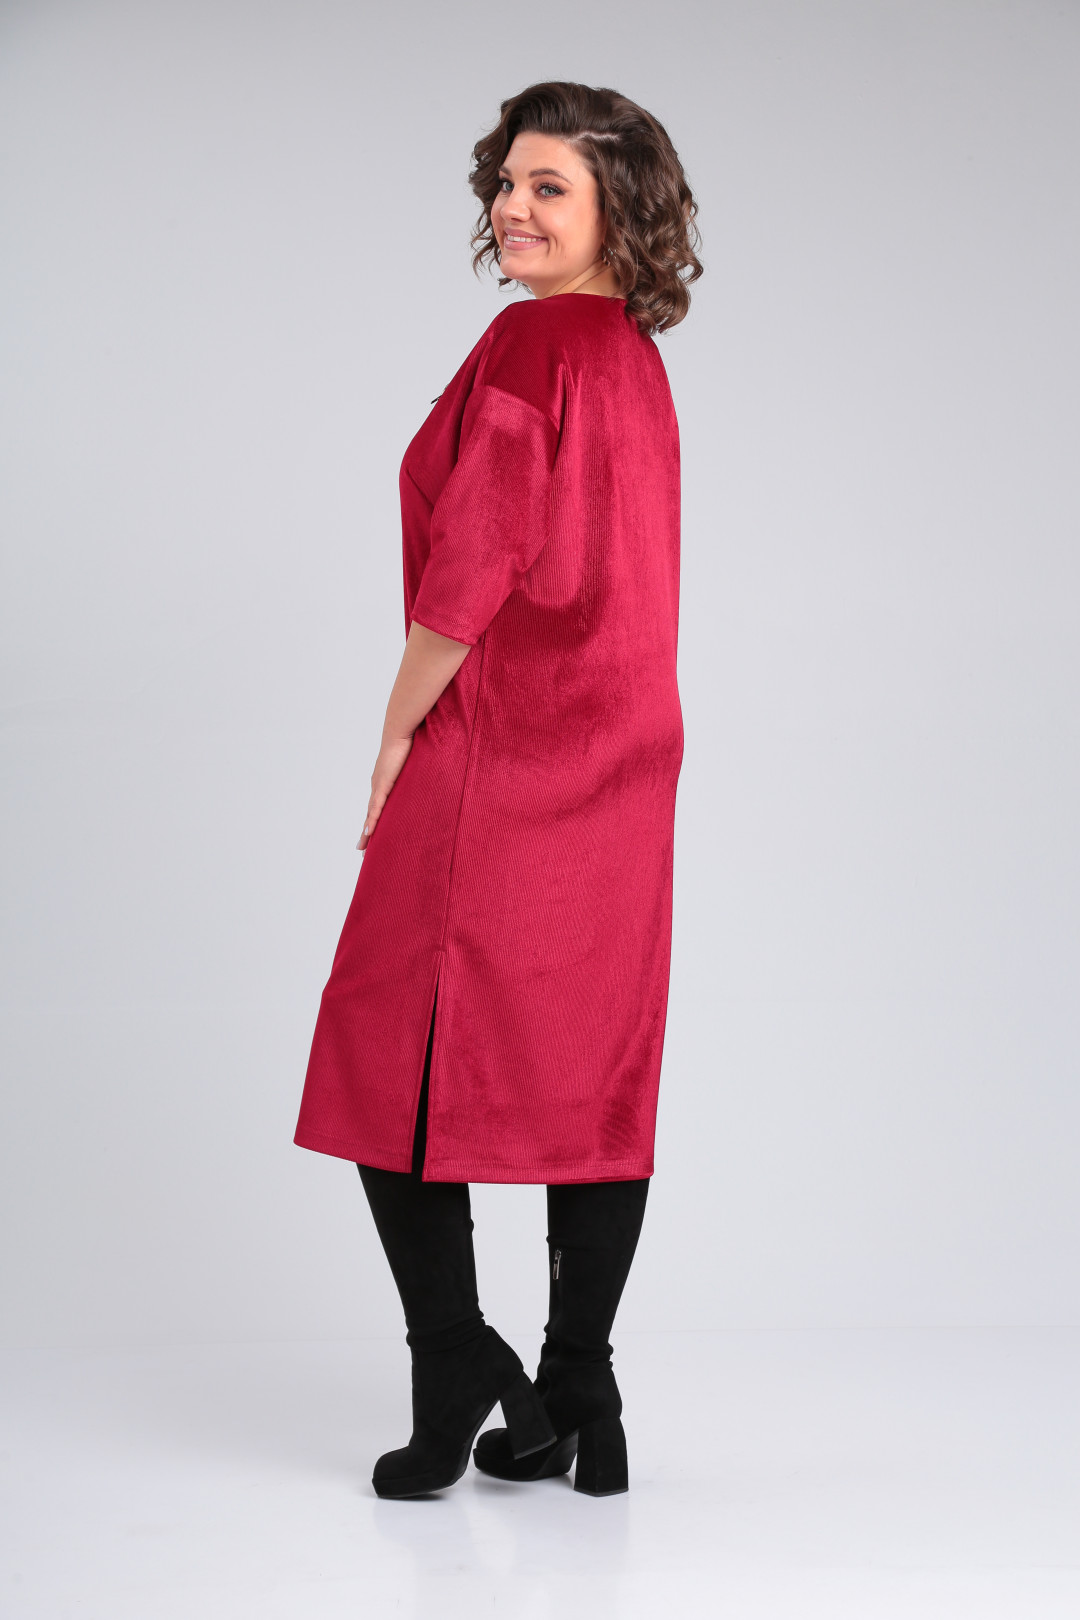 Платье Мишель Шик 2155 красный